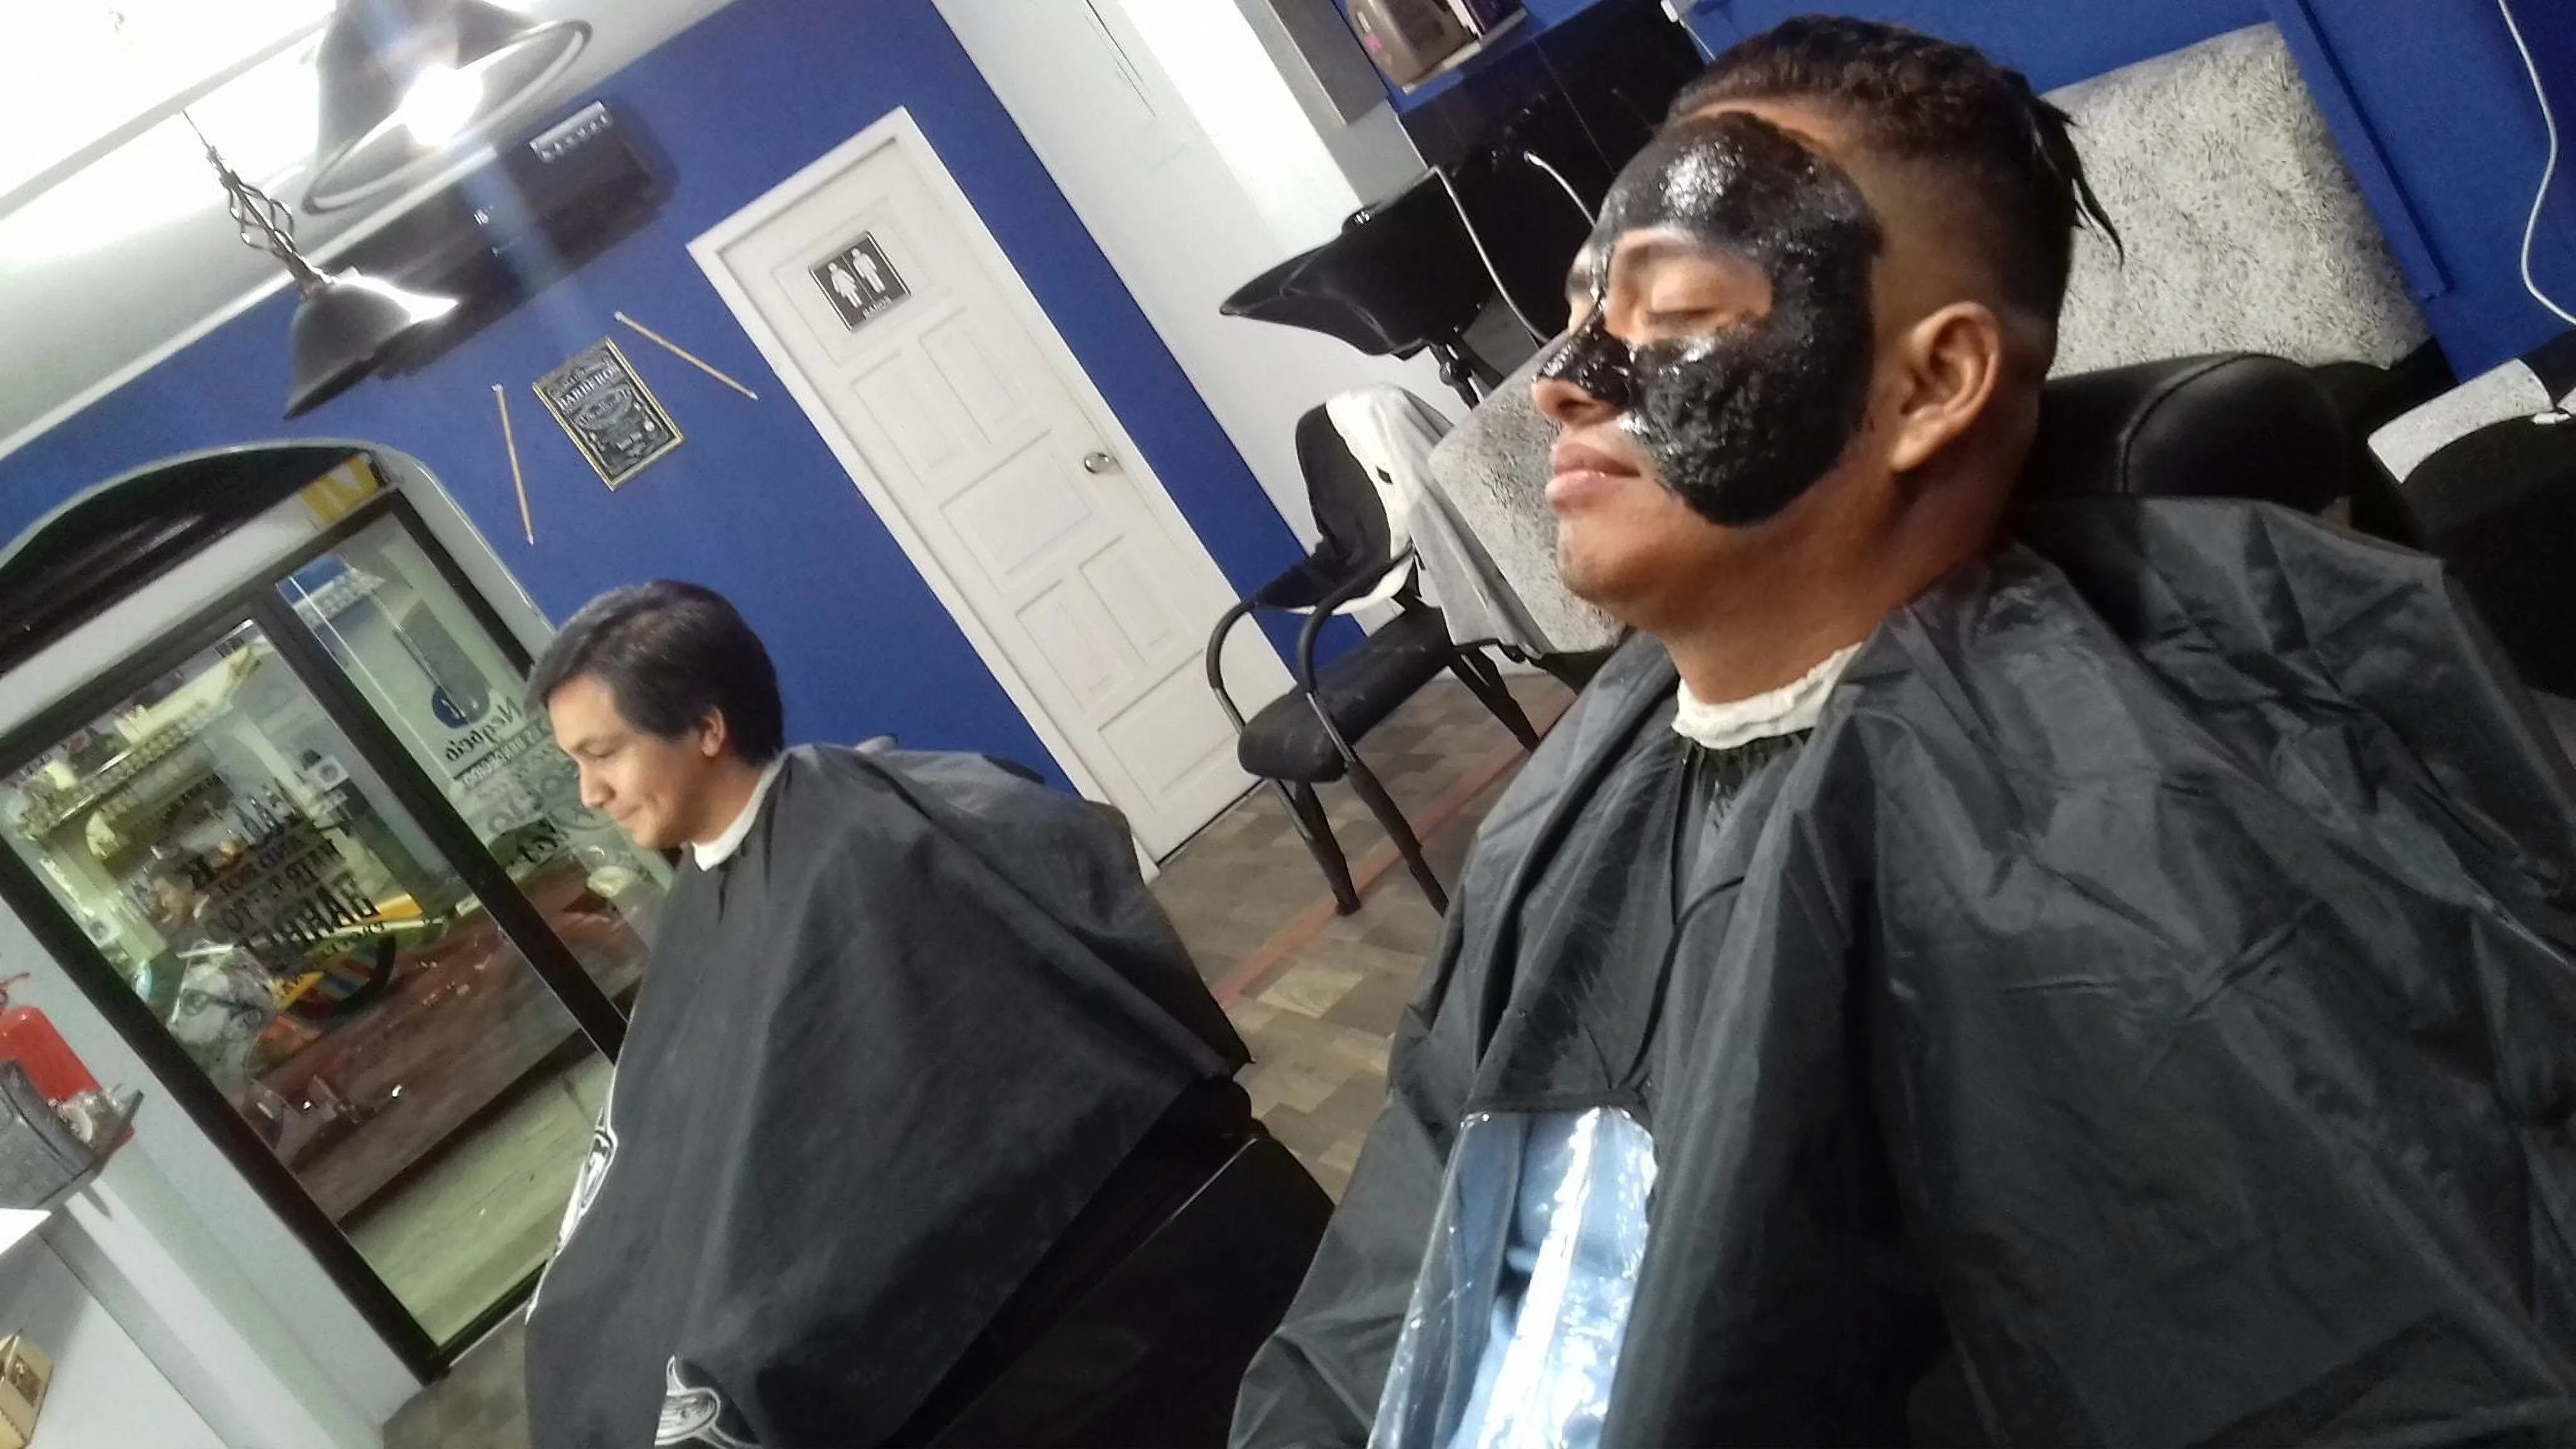 Barbería-the-spartan-barbershop-11548